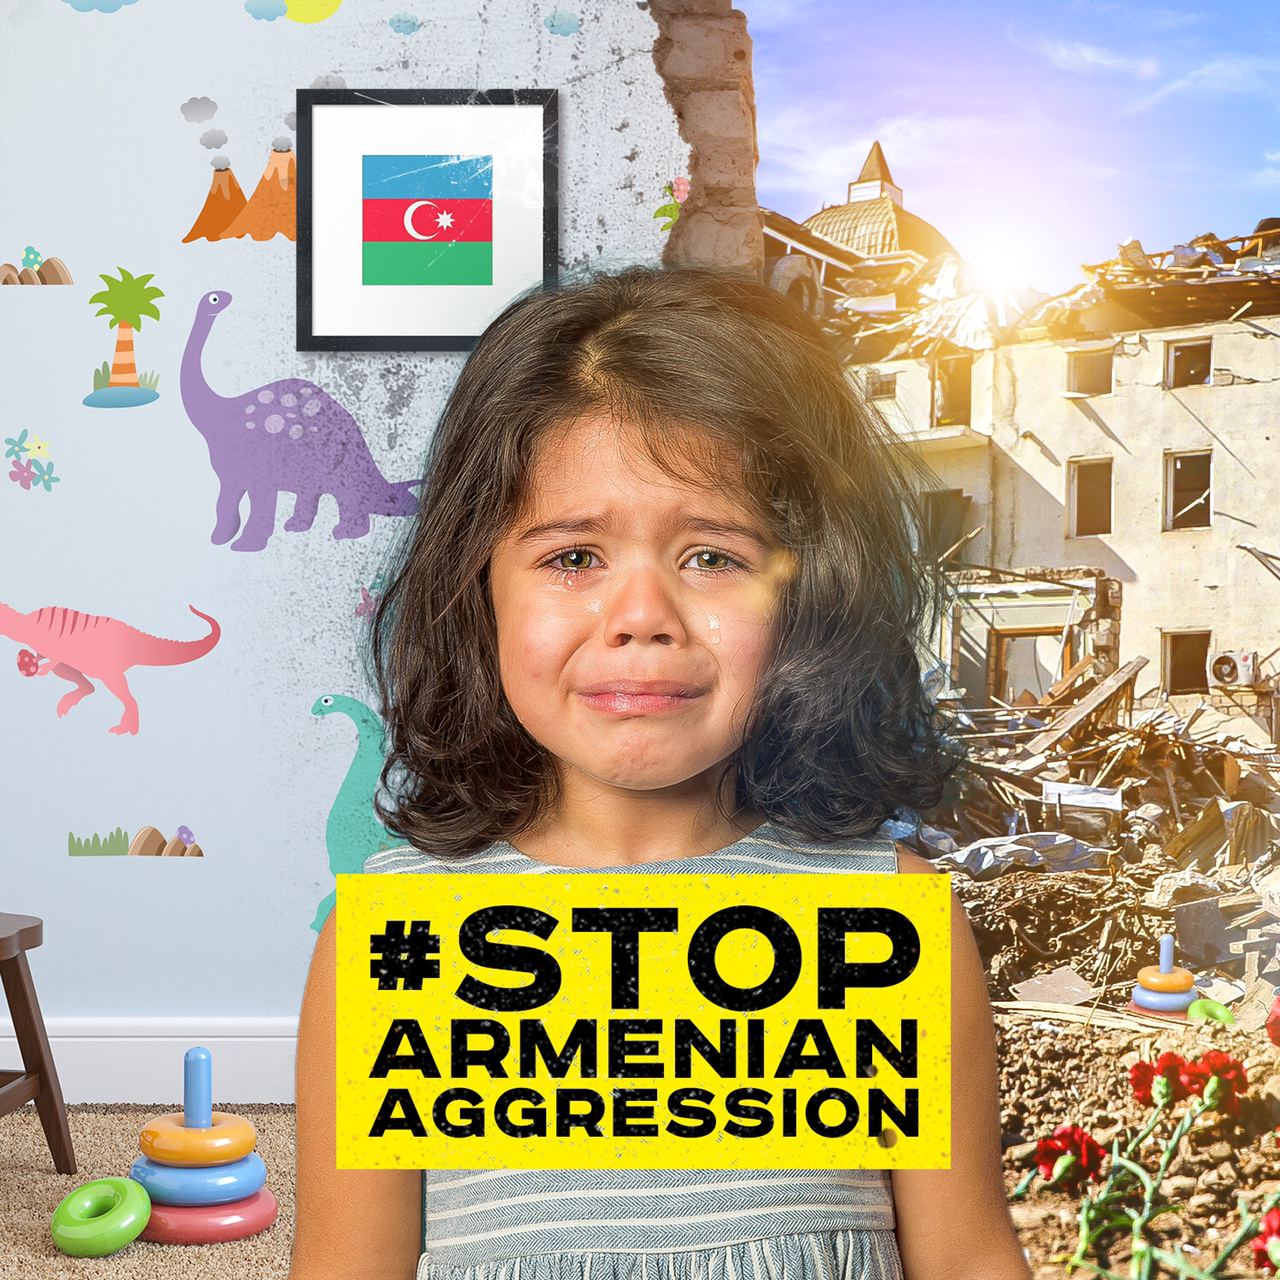 Erməni terroruna "dayan!" deyən Elanur - VİDEO